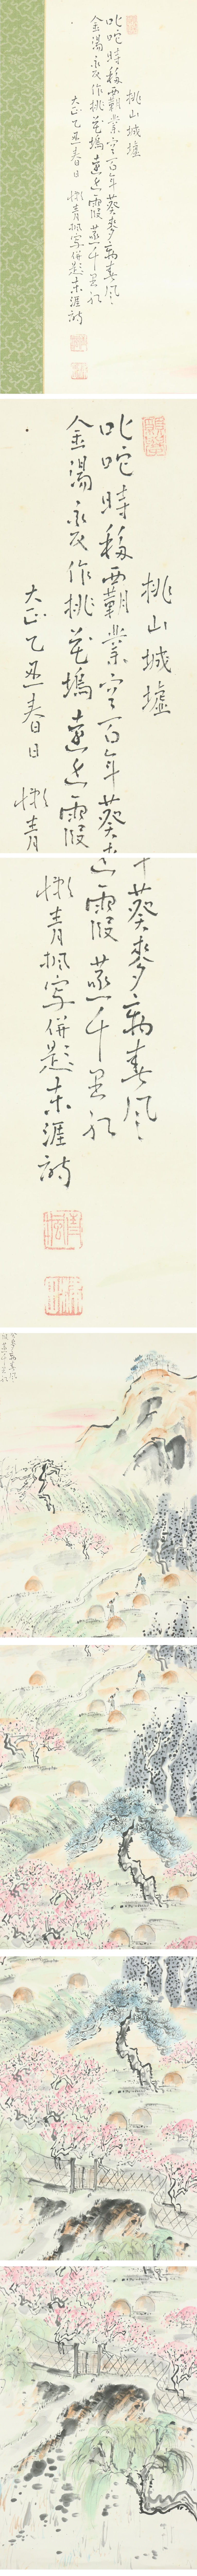 ご購入◆津田青楓◆桃山城墟◆大正14年◆京都◆日本画◆洋画家◆肉筆◆紙本◆掛軸◆m614 山水、風月